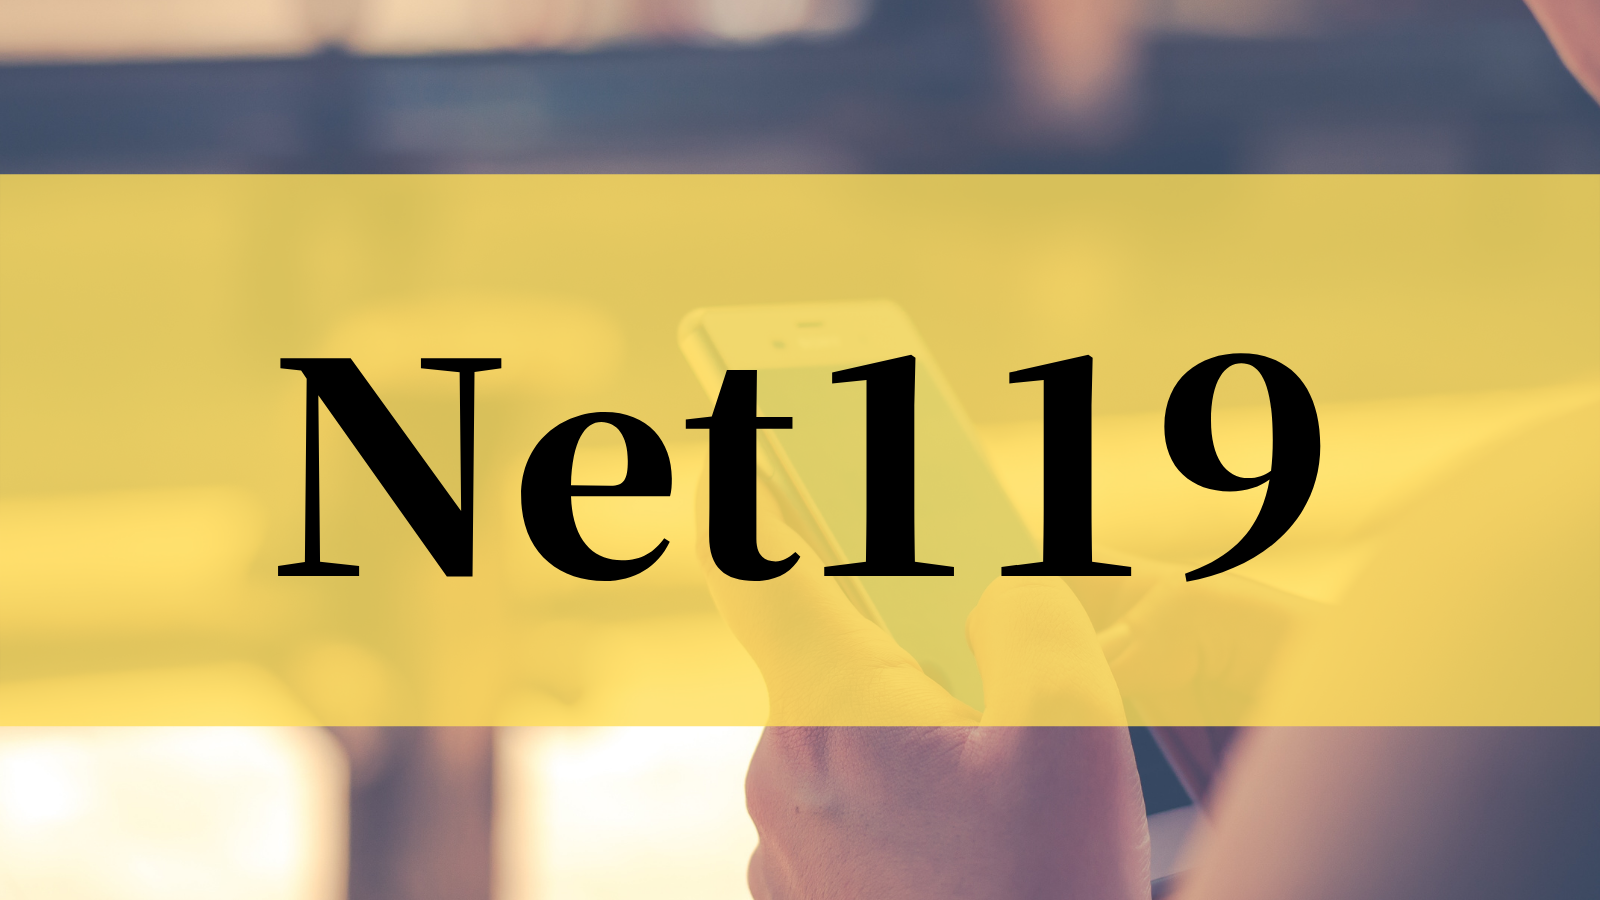 Net119をご存じですか？